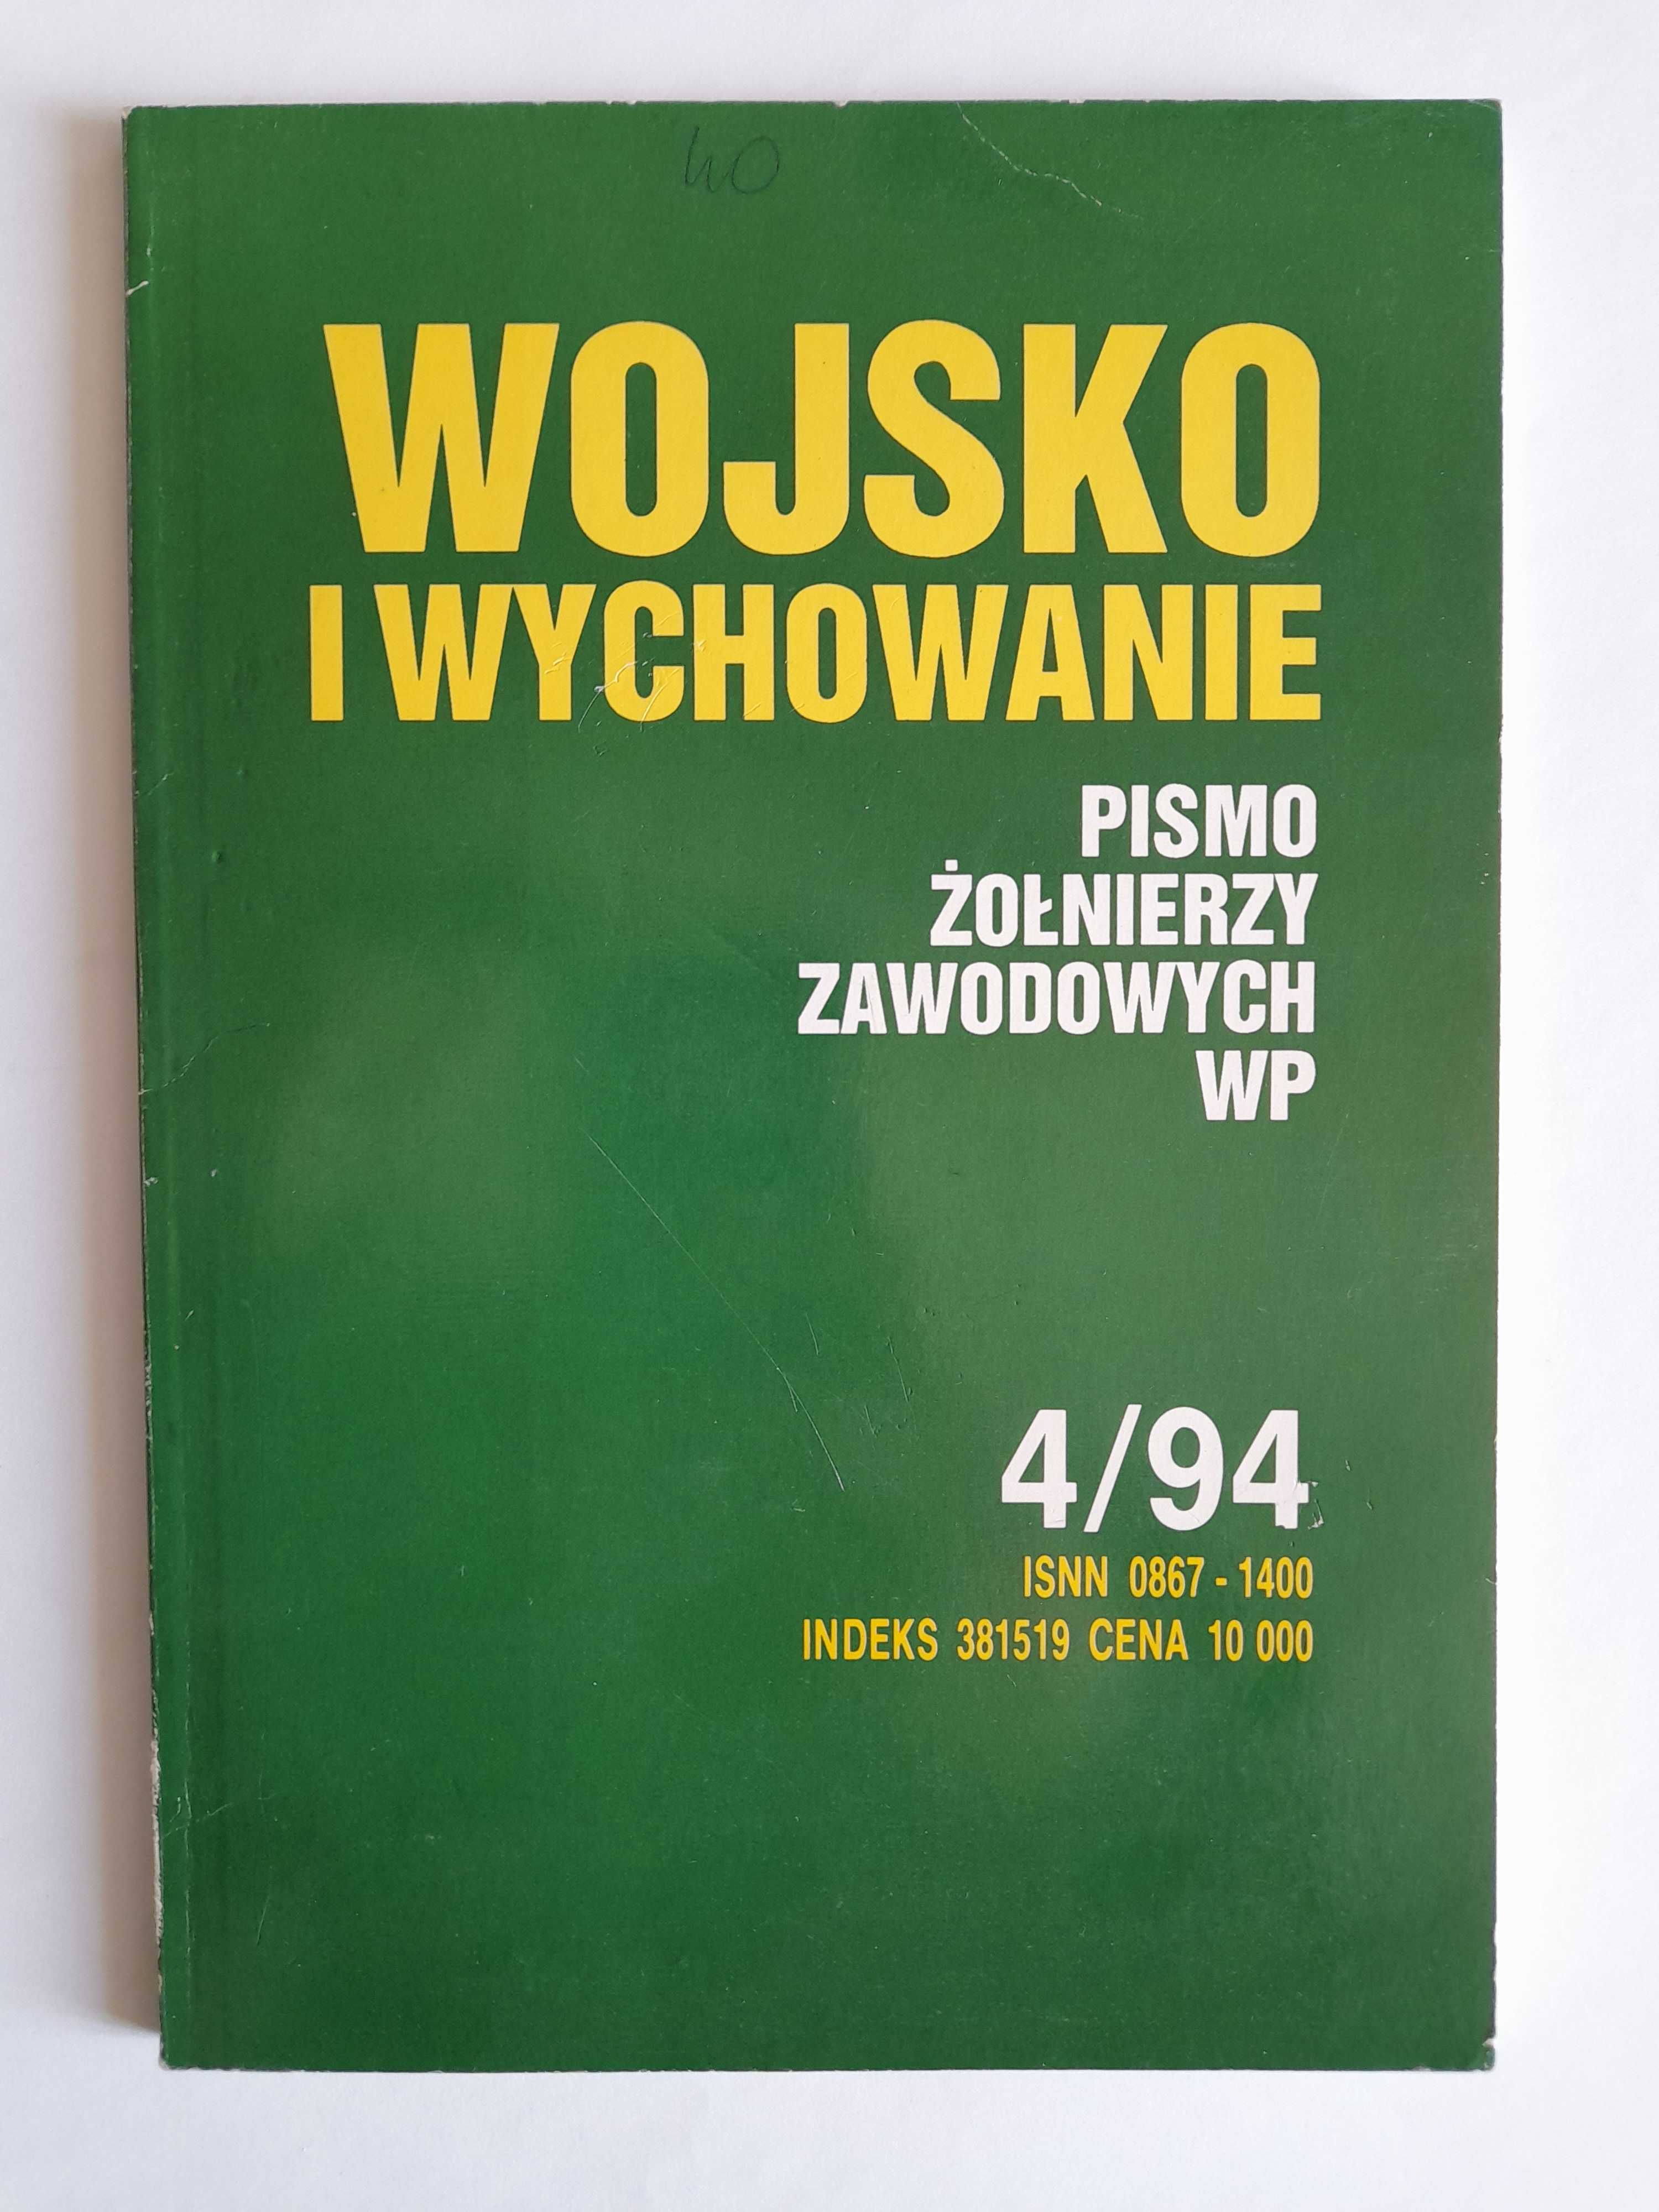 WOJSKO I WYCHOWANIE. Pismo żołnierzy zawodowych WP 4 / 1994